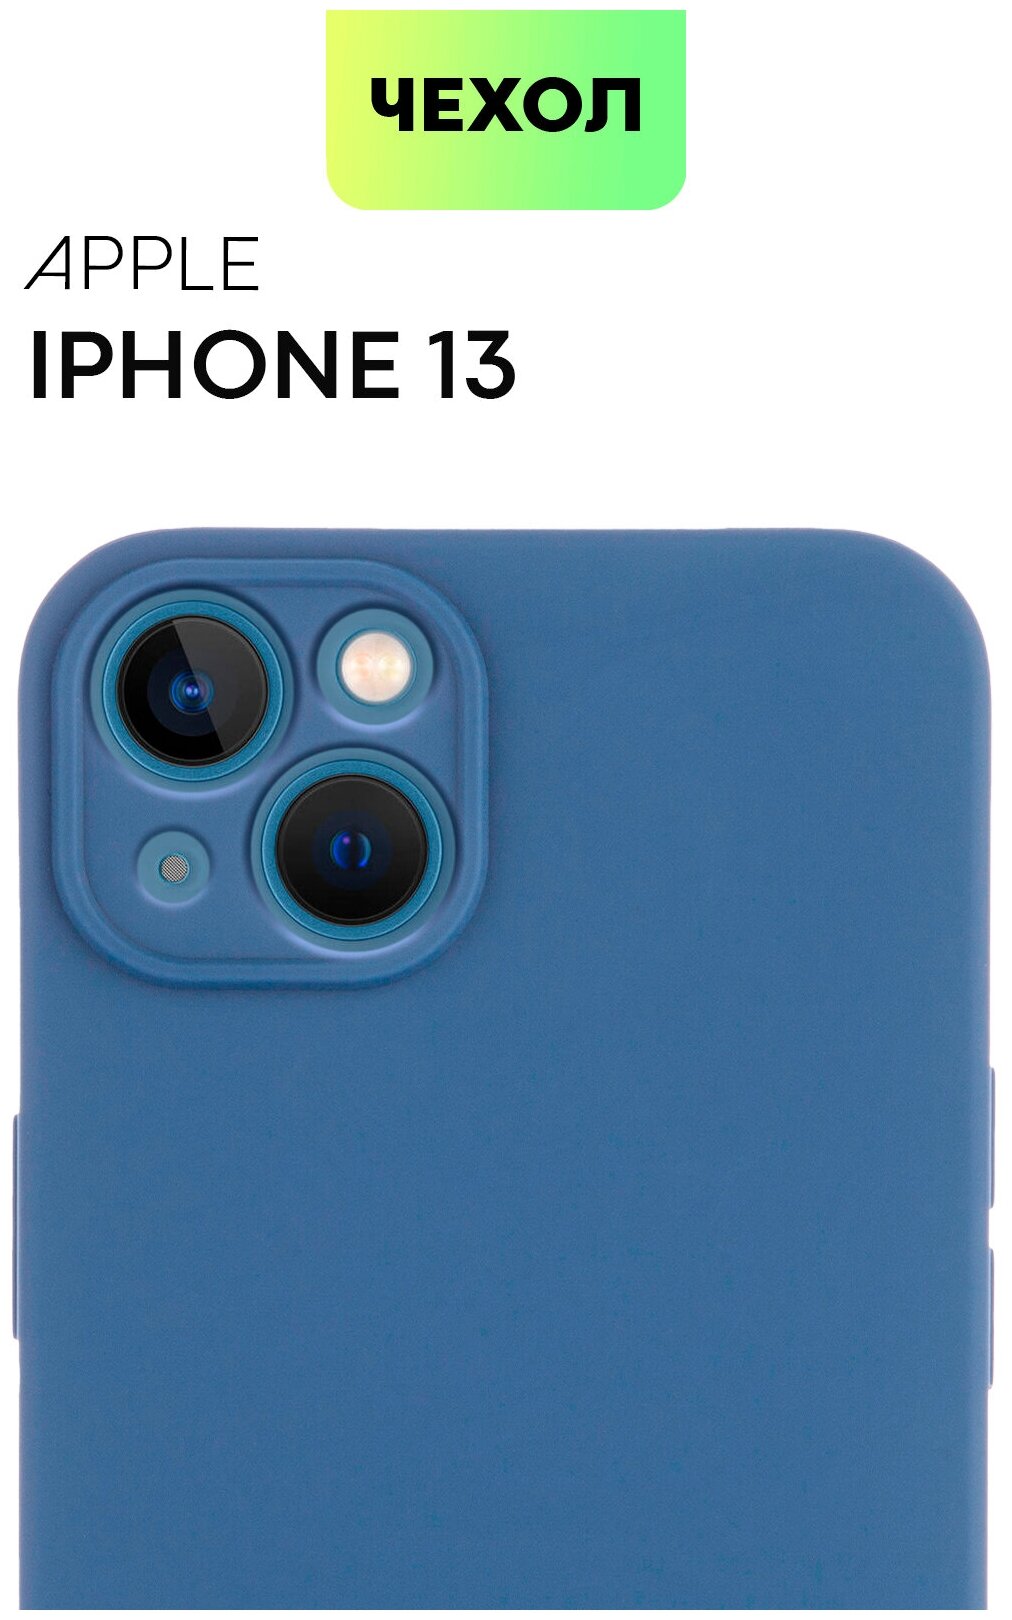 Чехол BROSCORP для Apple iPhone 13 (Эпл Айфон 13), тонкая с матовым SOFT-TOUCH покрытием, бортик (защита) вокруг модуля камер, темно-синяя